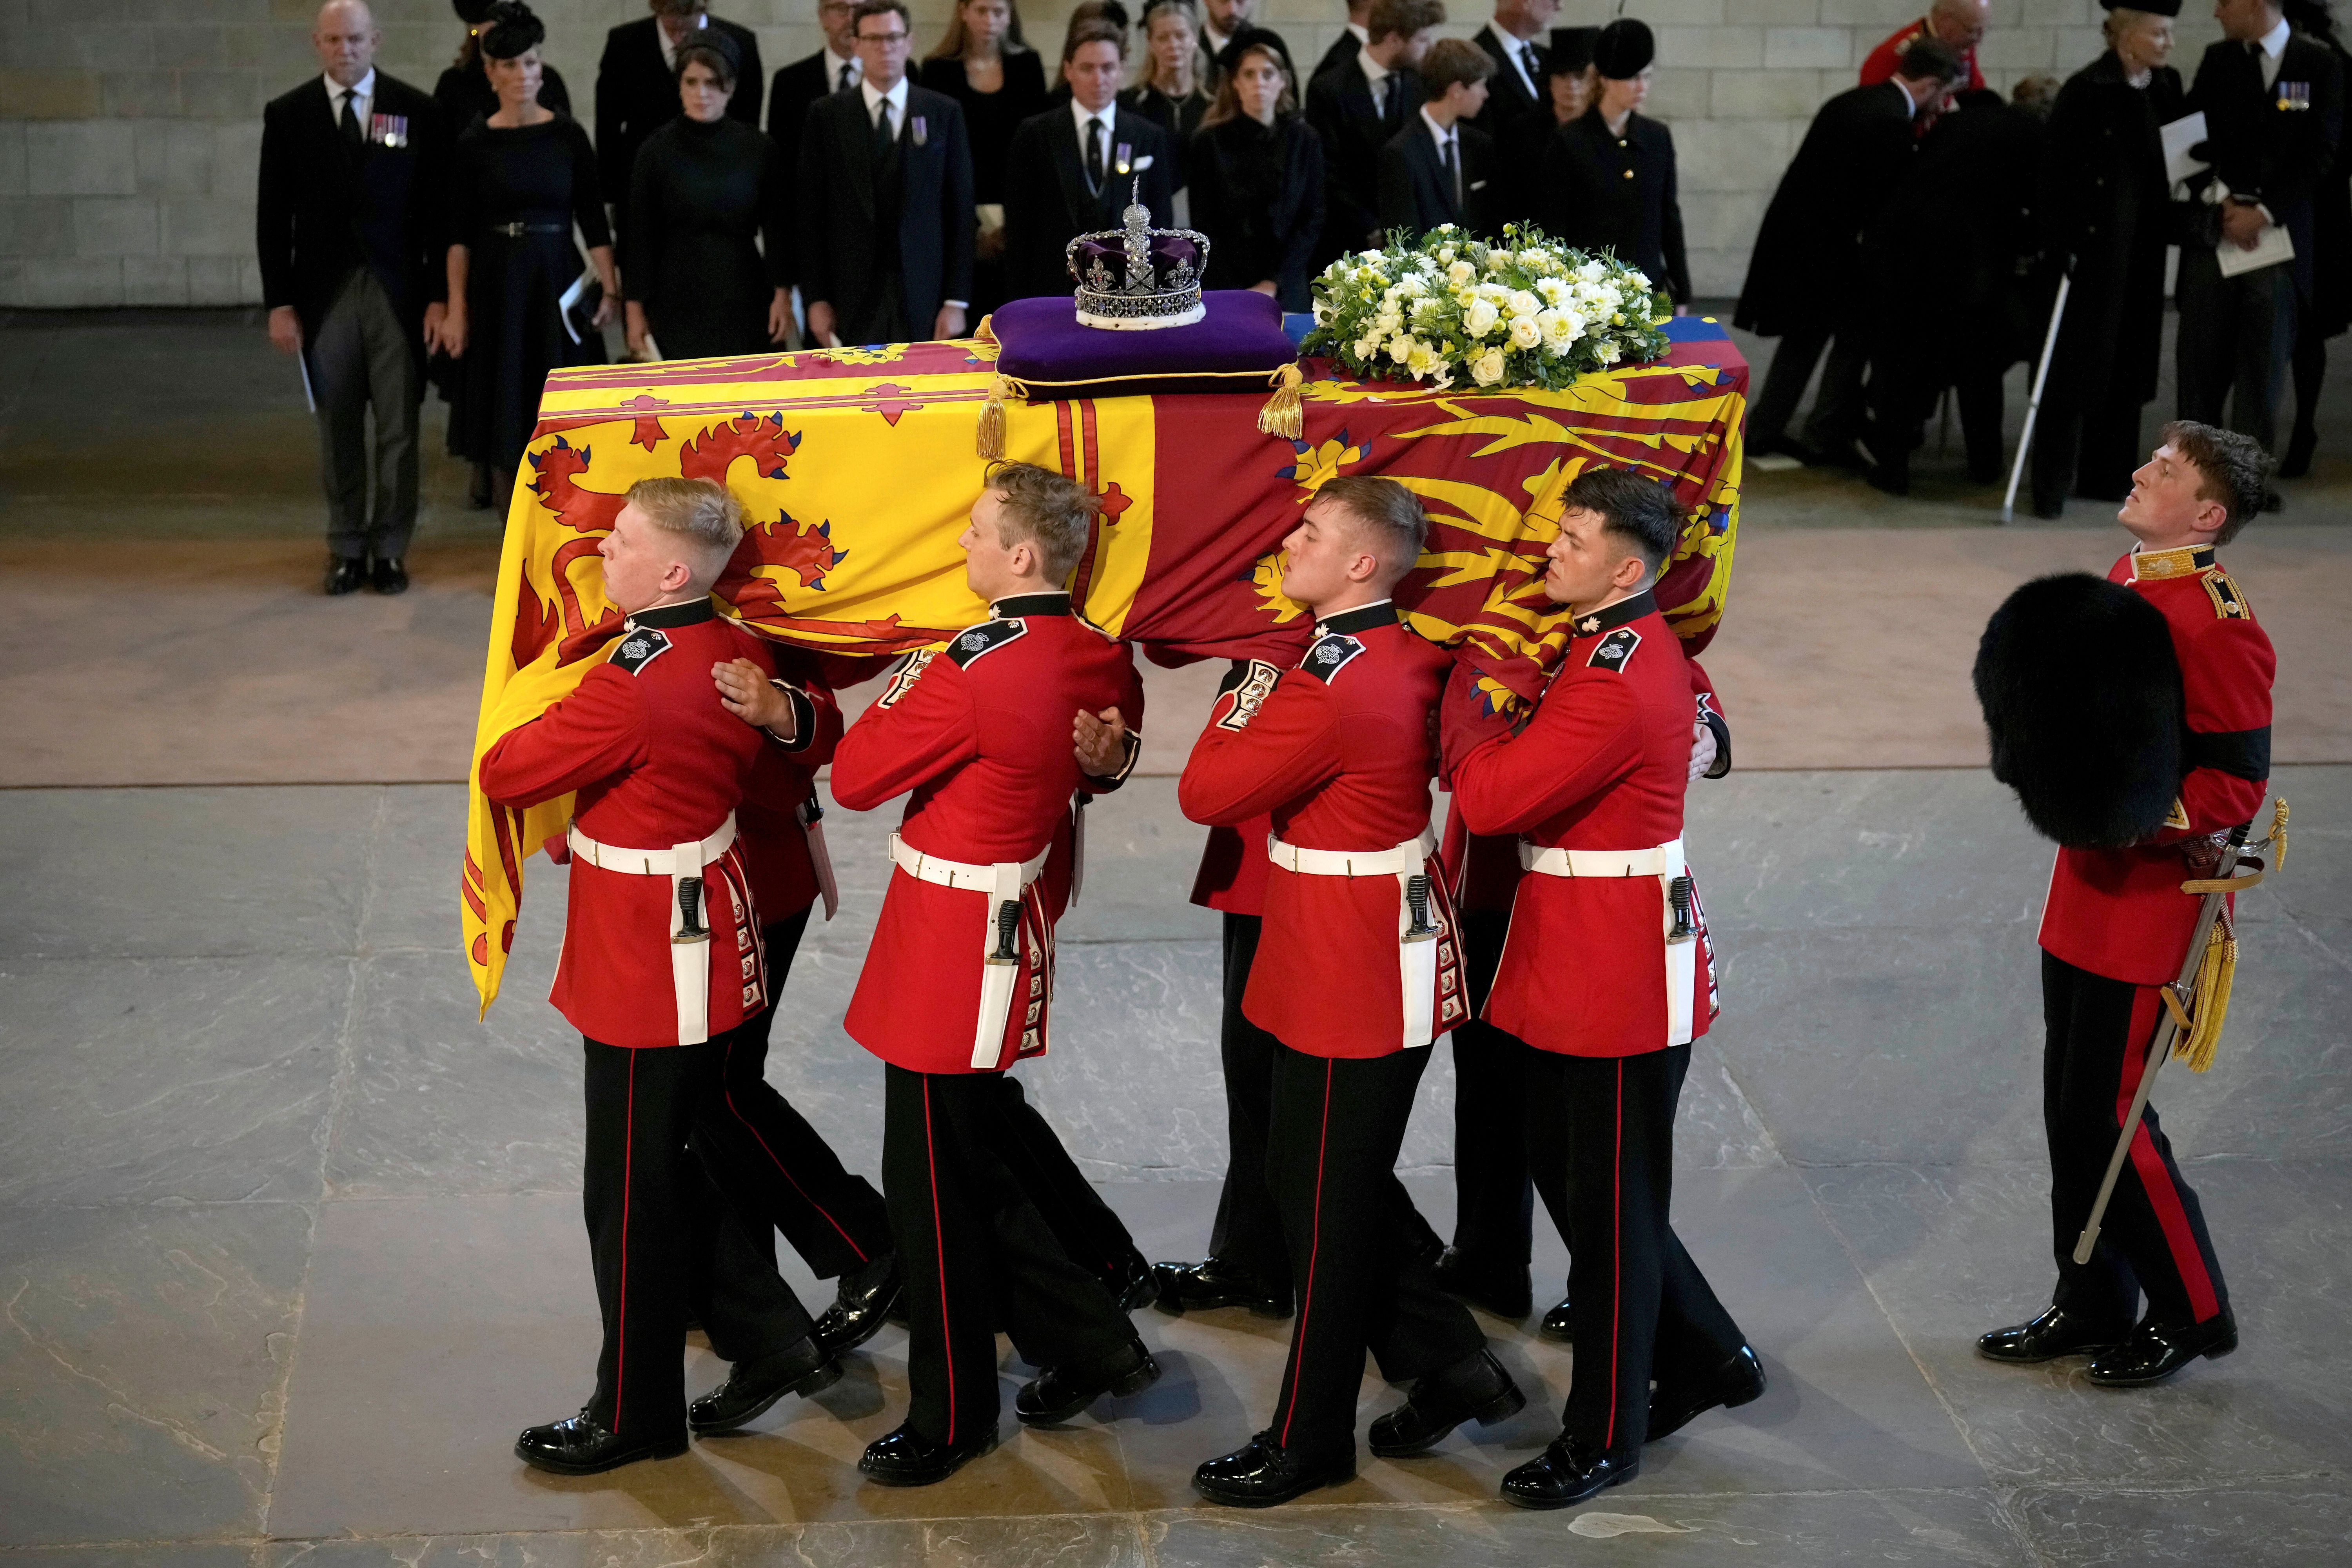 Viele fragen sich: Liegt der Leichnam der Queen tatsächlich während der Beerdigung im Sarg? Die Antwort: Ja.